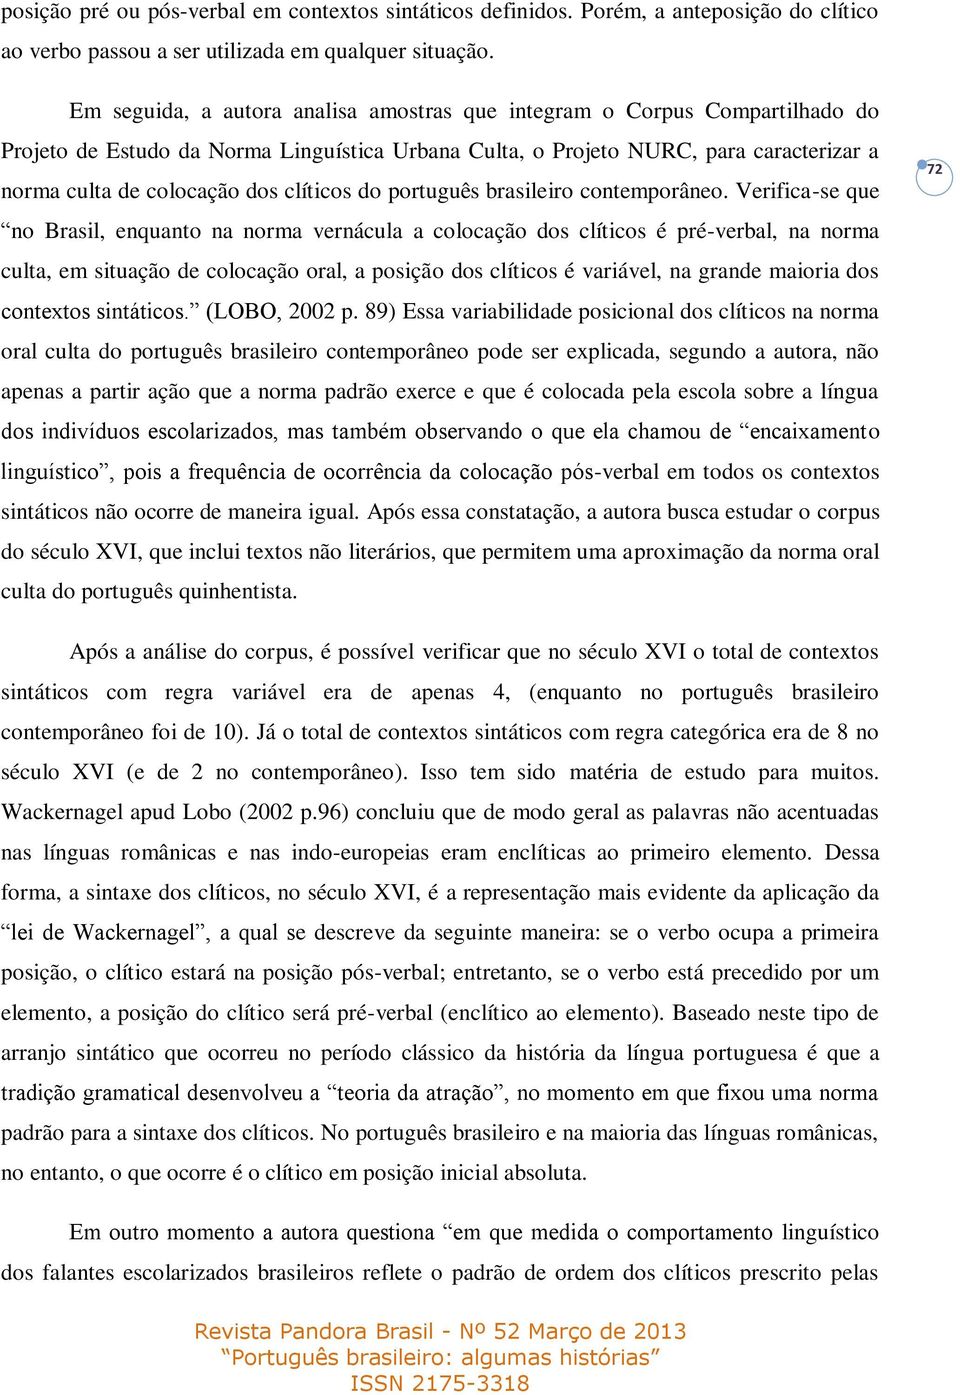 clíticos do português brasileiro contemporâneo.